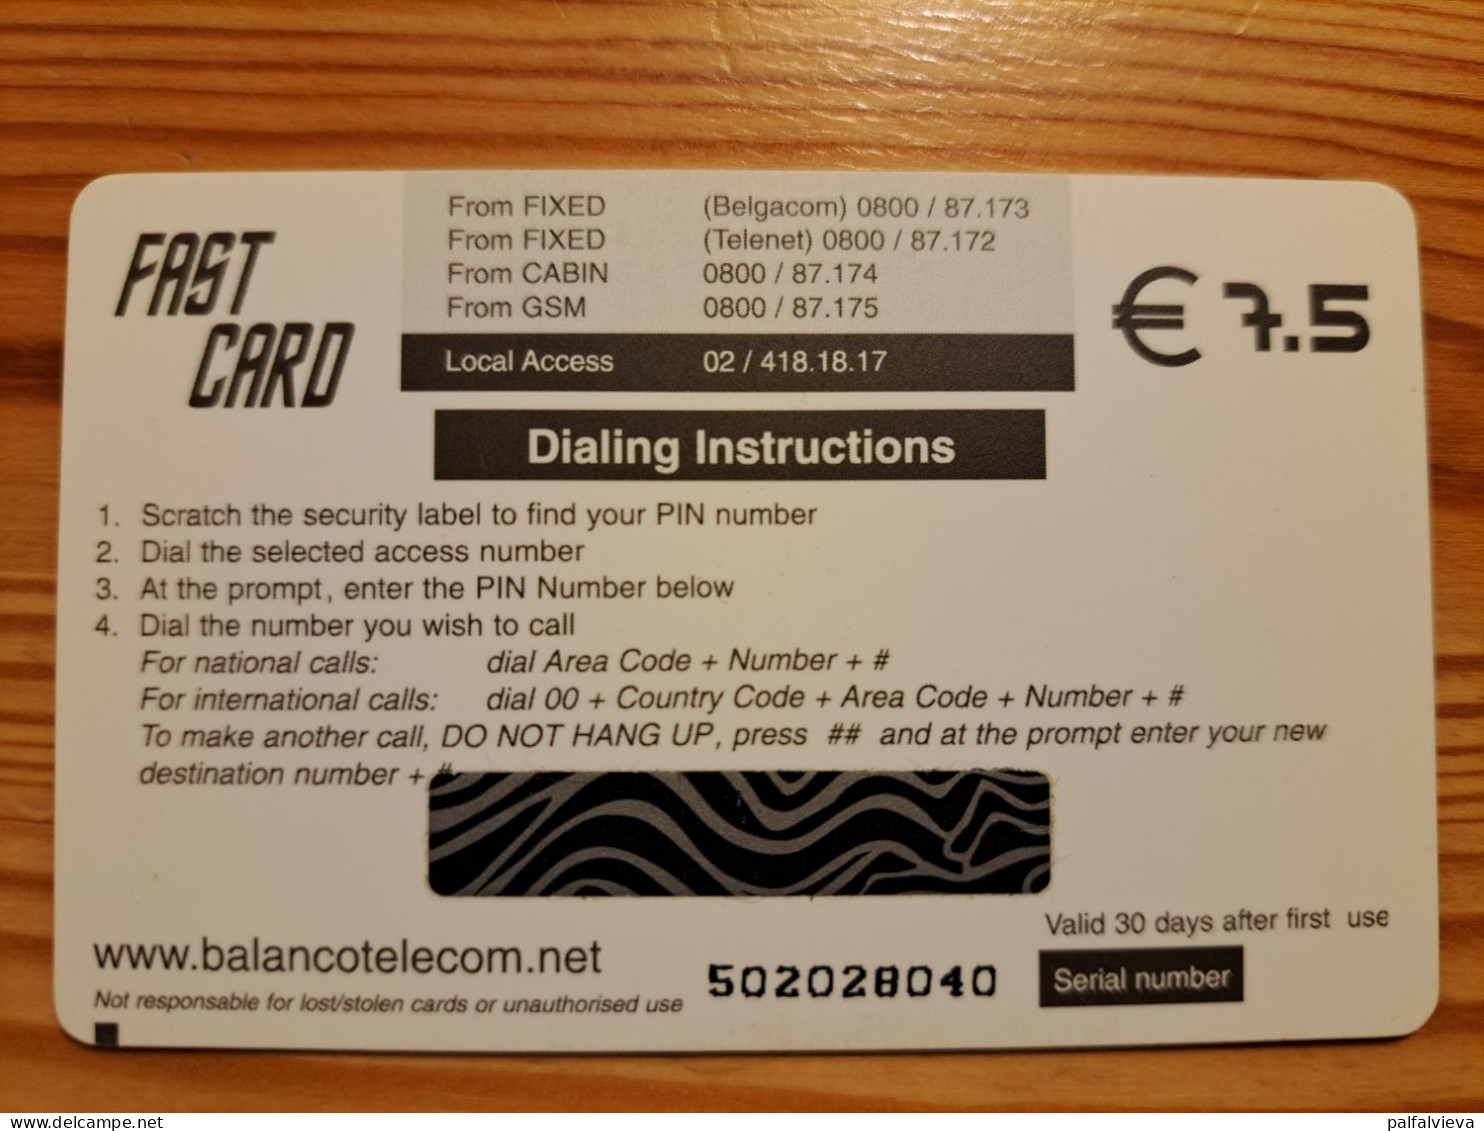 Prepaid Phonecard Netherlands, Fast Card - Cheetah - GSM-Kaarten, Bijvulling & Vooraf Betaalde